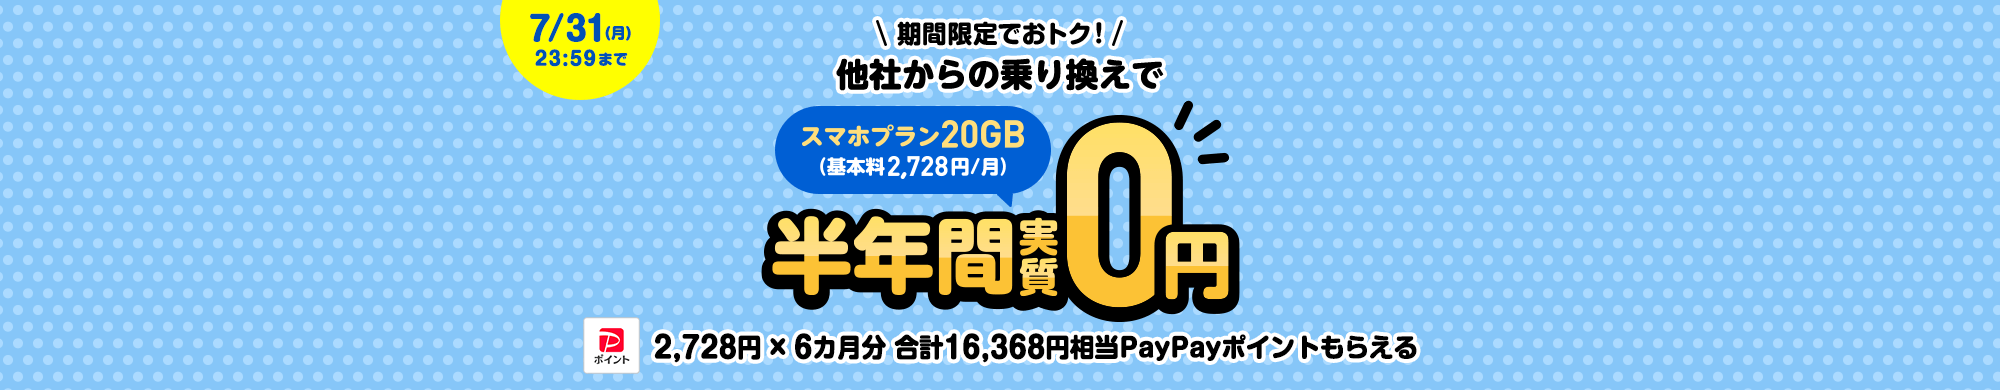 キャンペーン期間中に、他社からの乗り換えで、スマホプラン基本料6カ月分のPayPayポイント16,368円相当をプレゼントします。